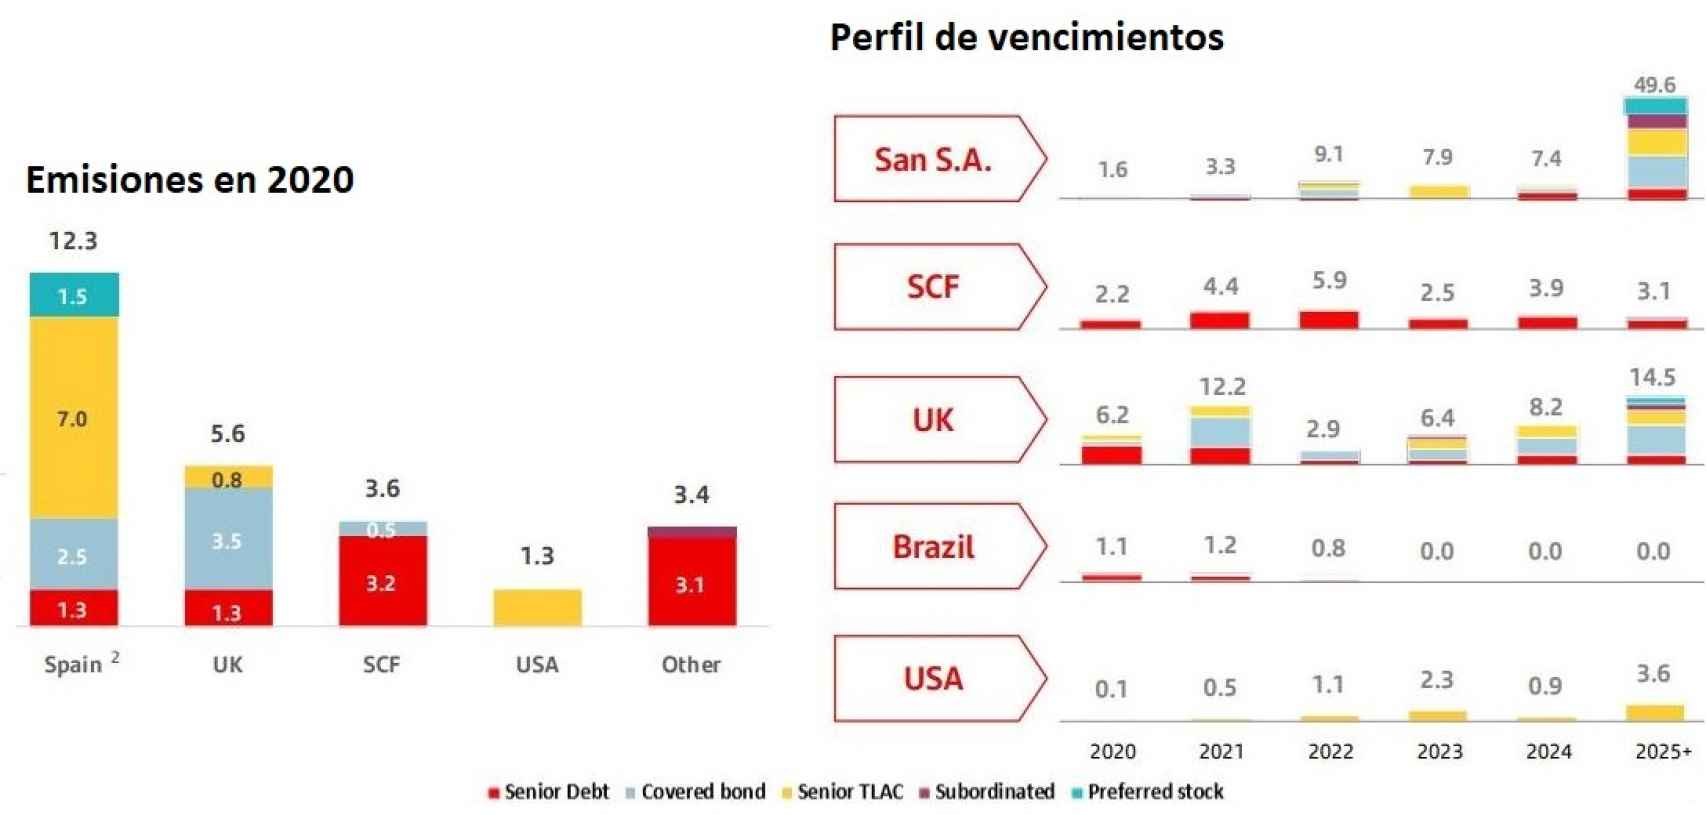 Estrategia de financiación del Banco Santander, datos en Bn eur.